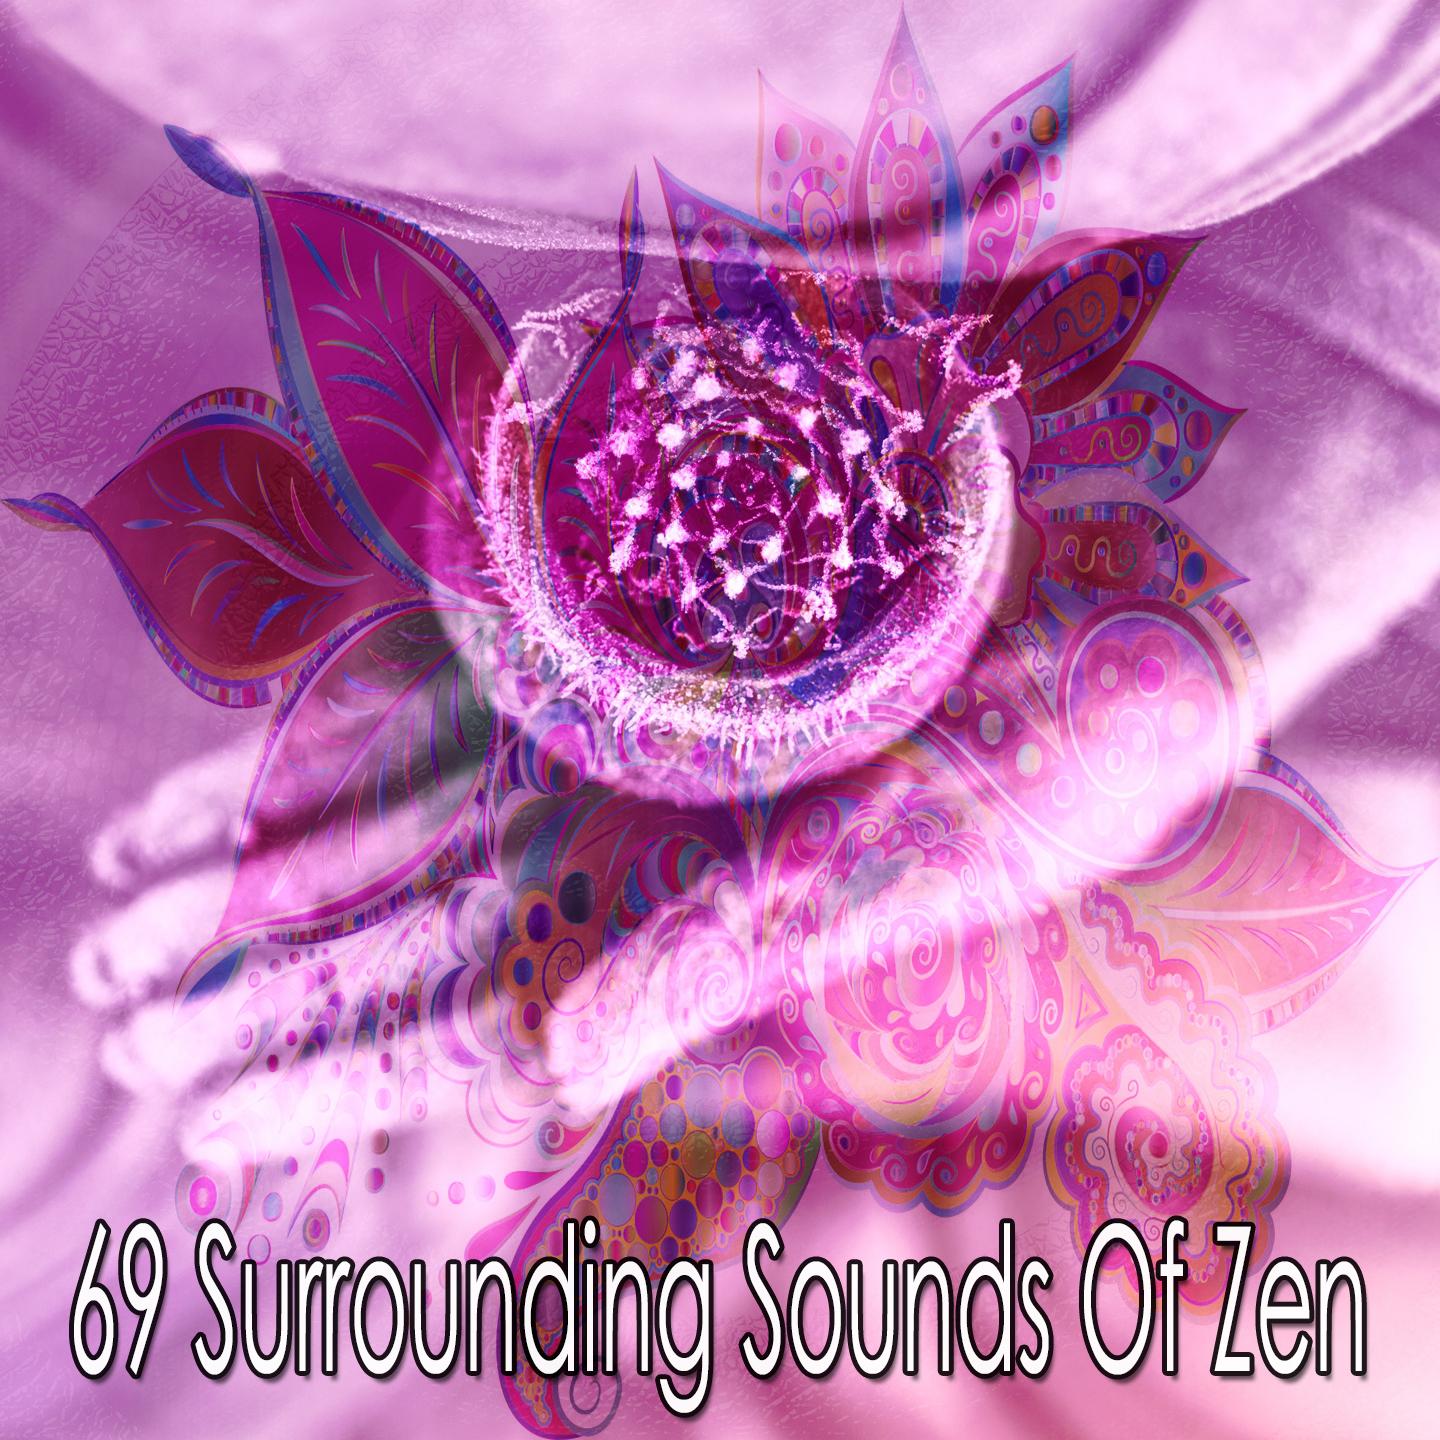 69 Surrounding Sounds of Zen